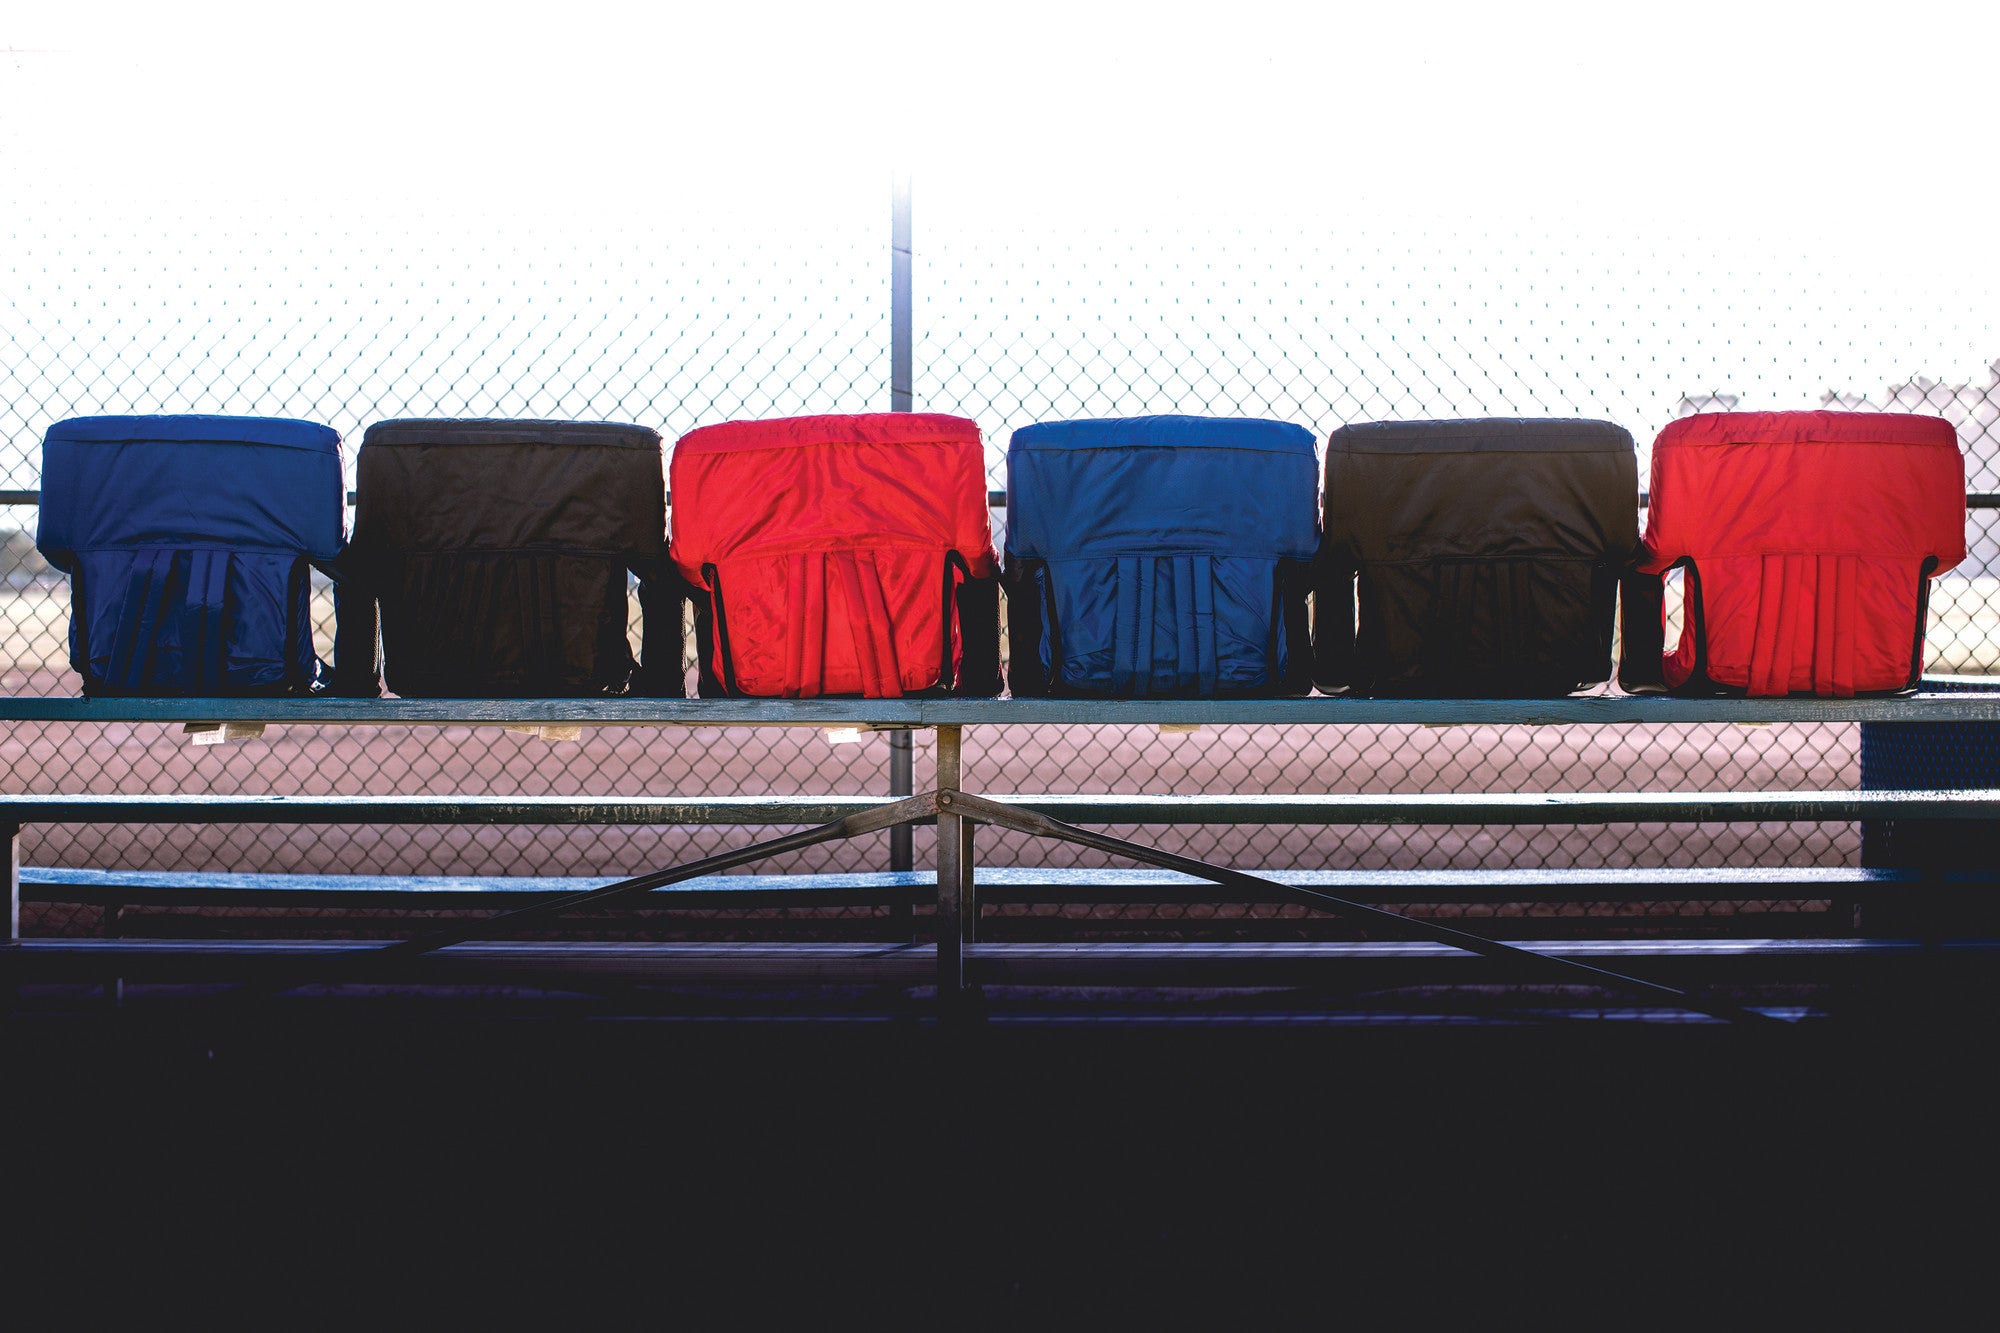 Boston College Eagles - Ventura Portable Reclining Stadium Seat